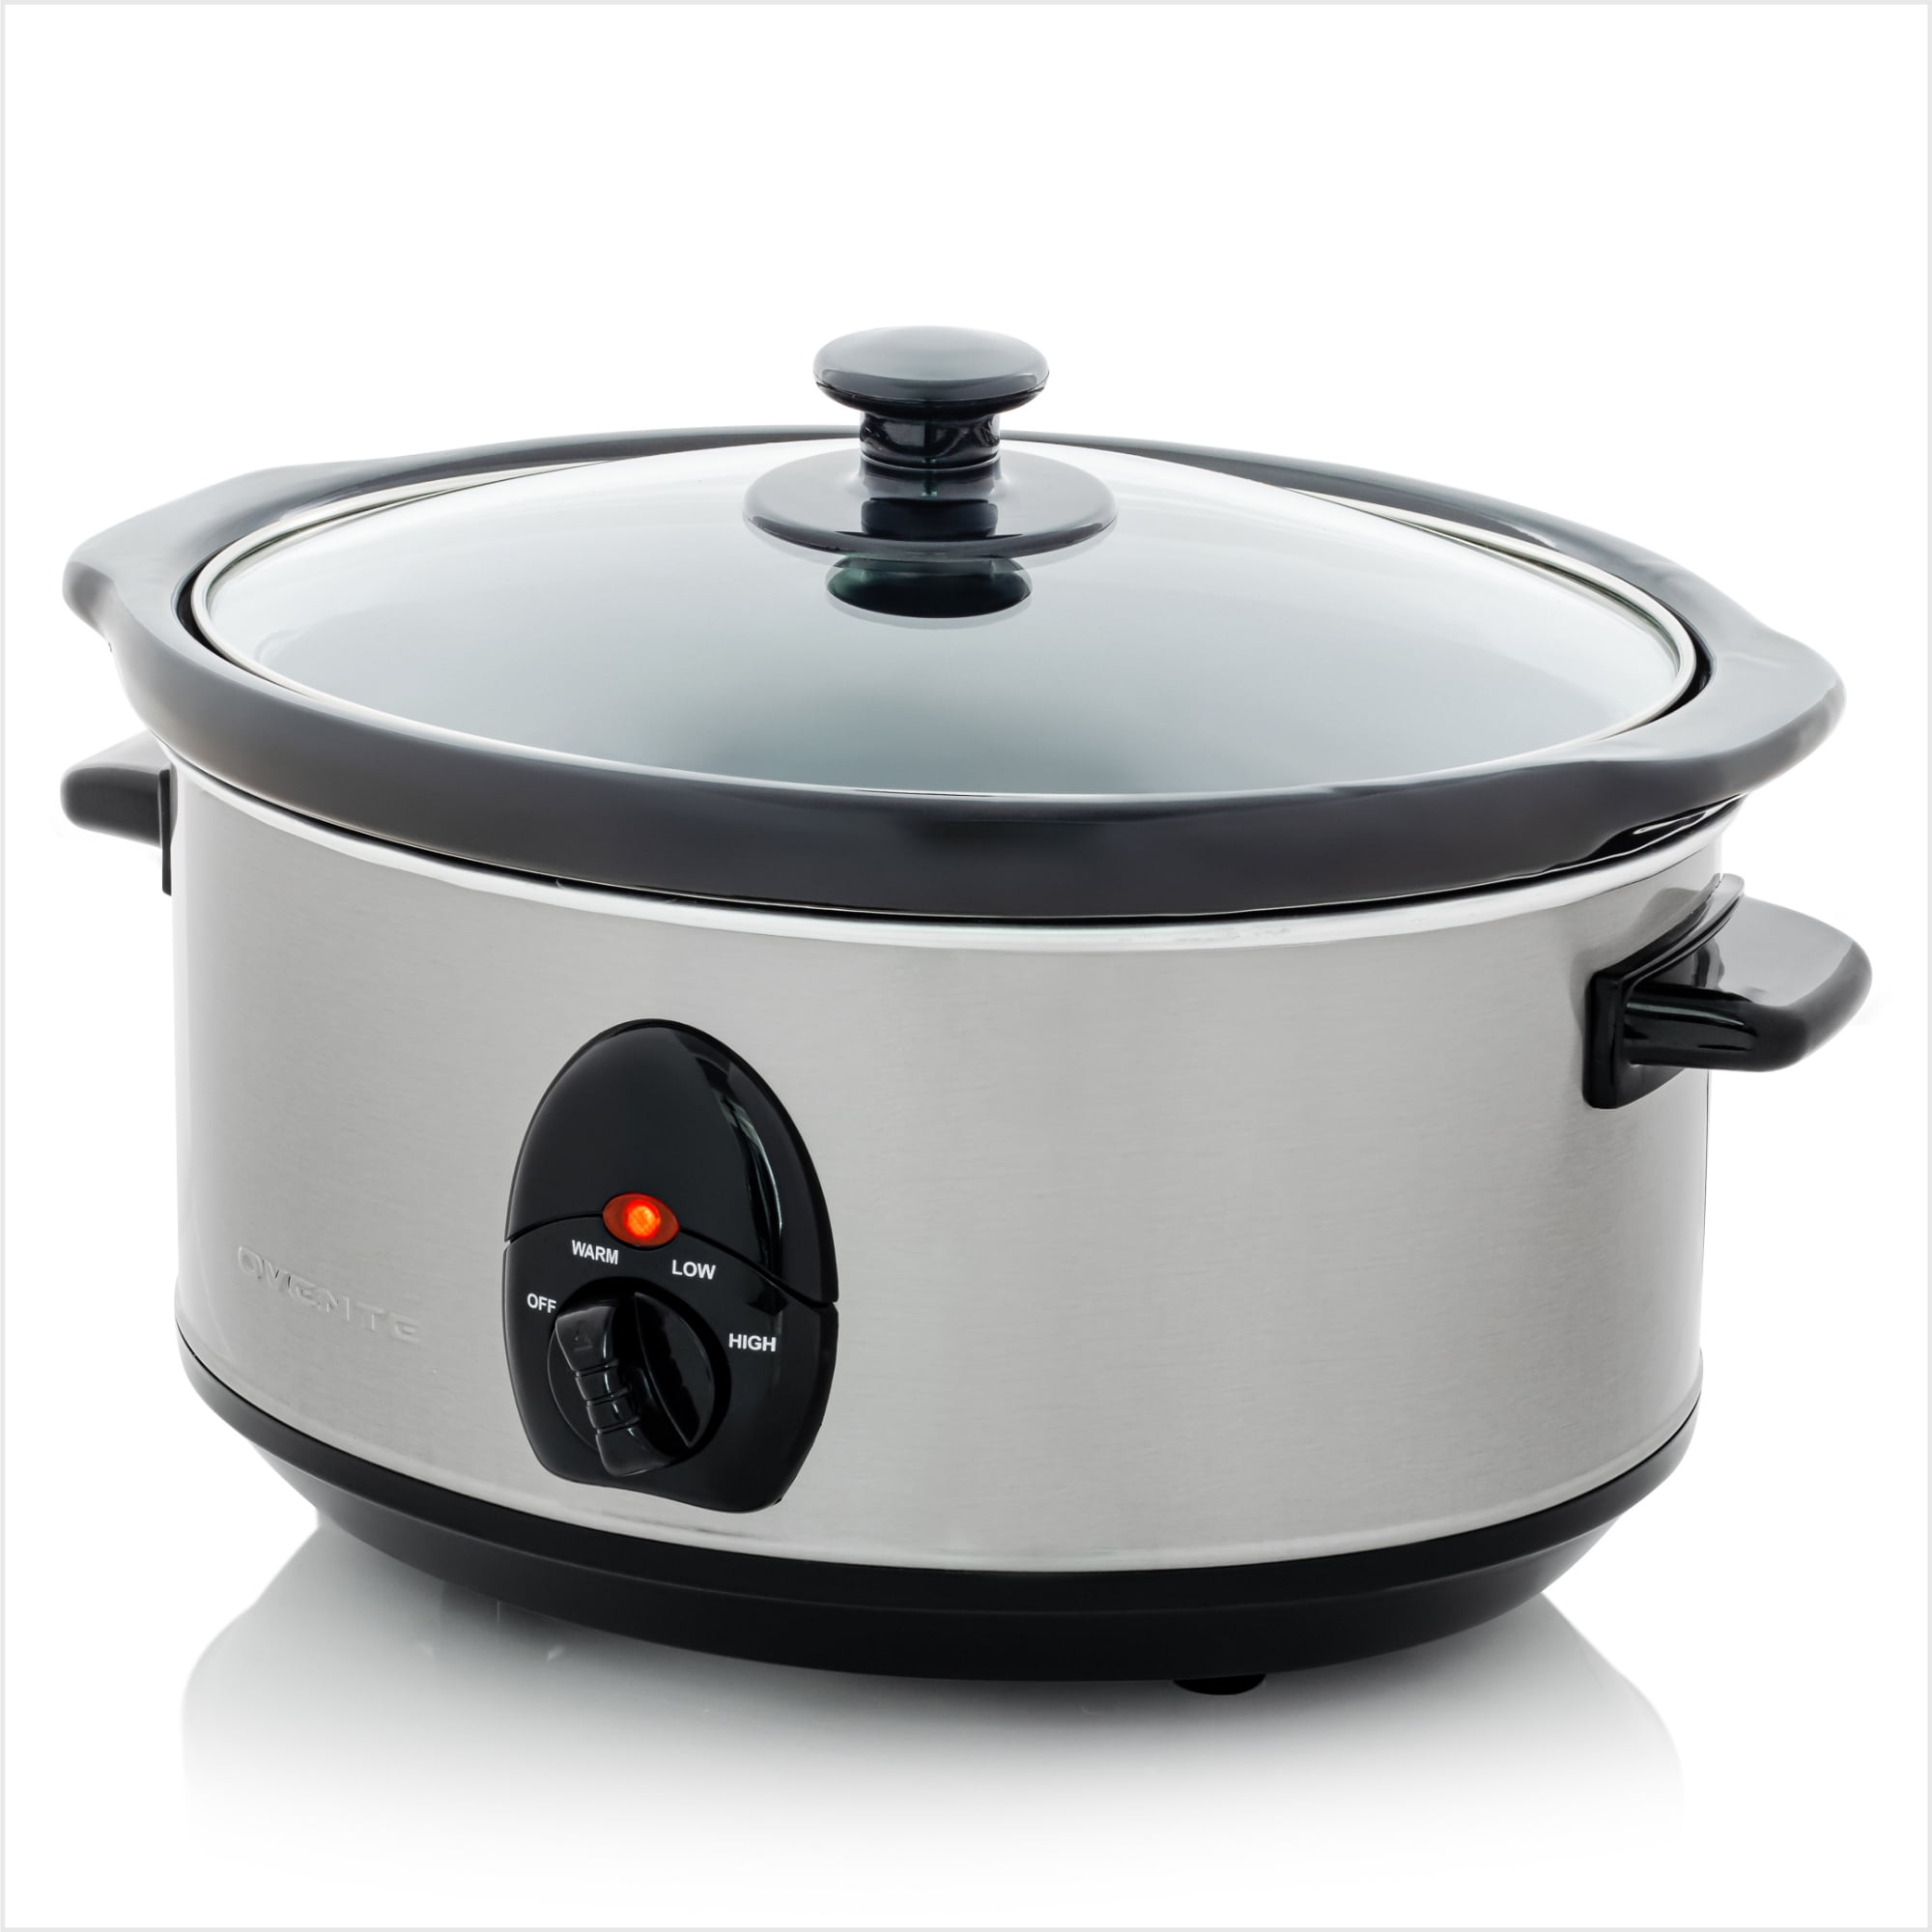 NOZAYA RNAB0BSFCKDV1 3 quart electric slow cooker - adjustable temp,  entrees, sauces, stews & dips, dishwasher safe glass lid & crock (black)